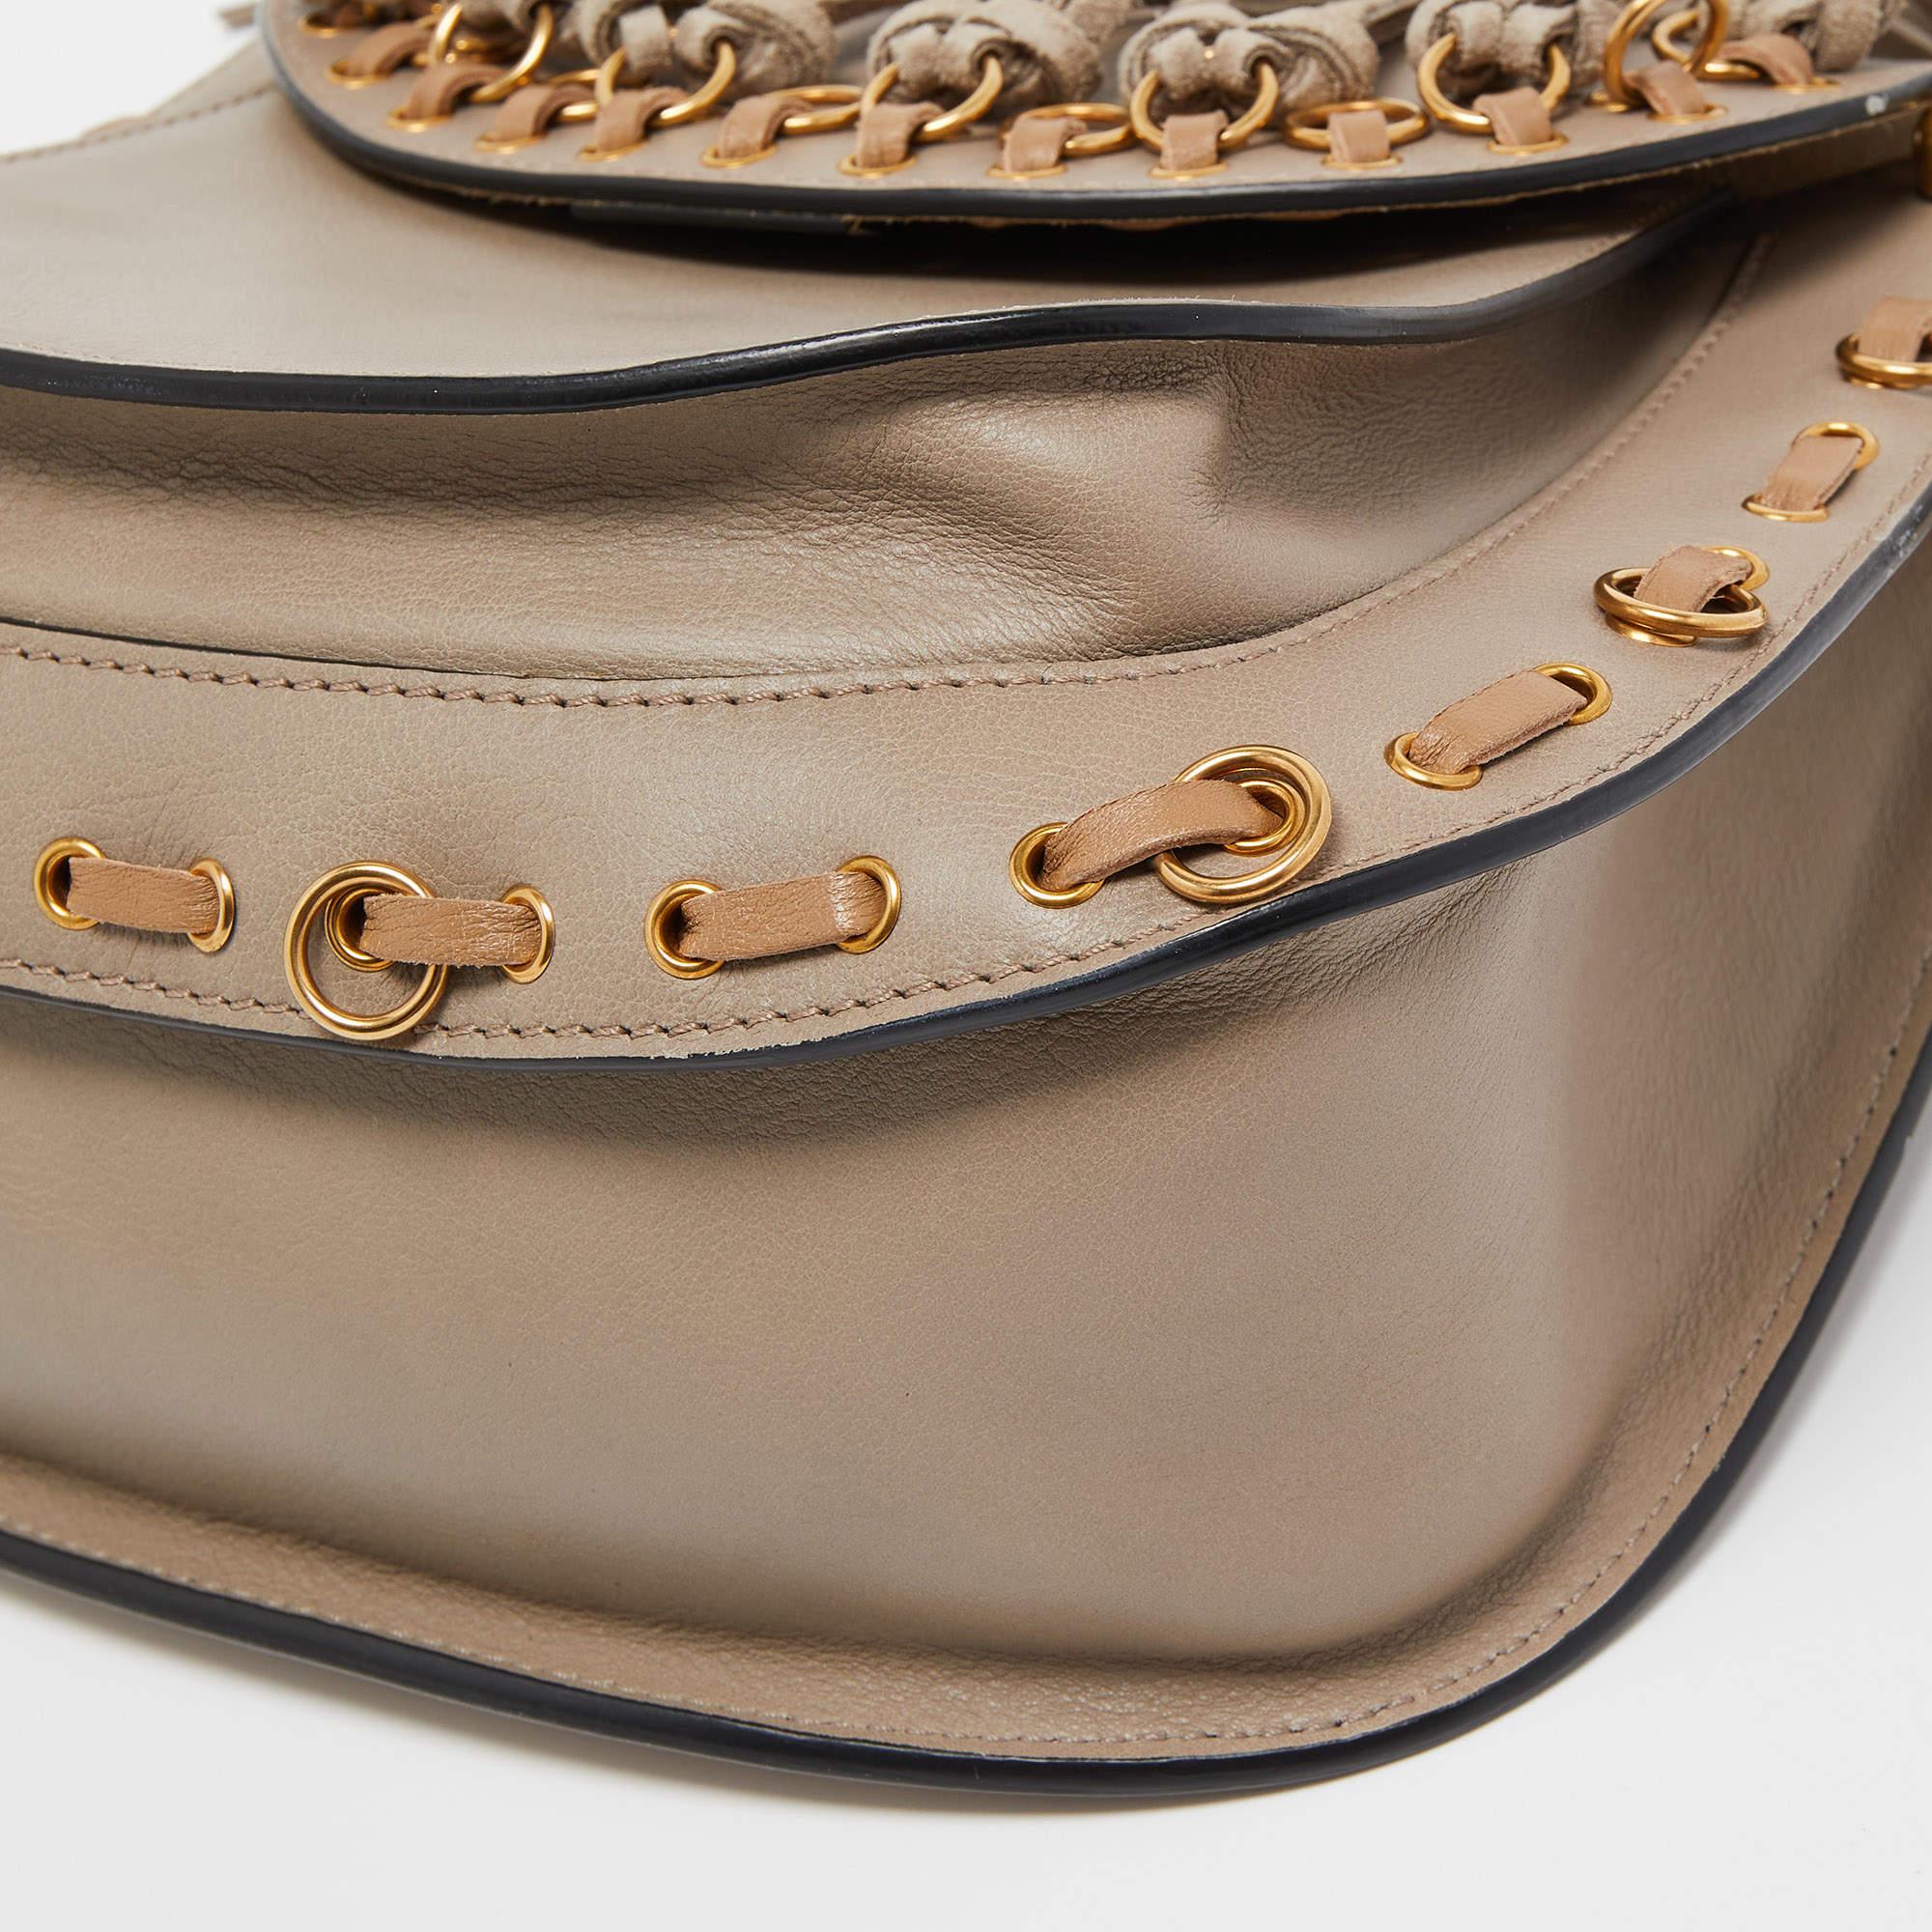 Chloe Beige/Black Leather Small Hudson Fringe Shoulder Bag For Sale 6